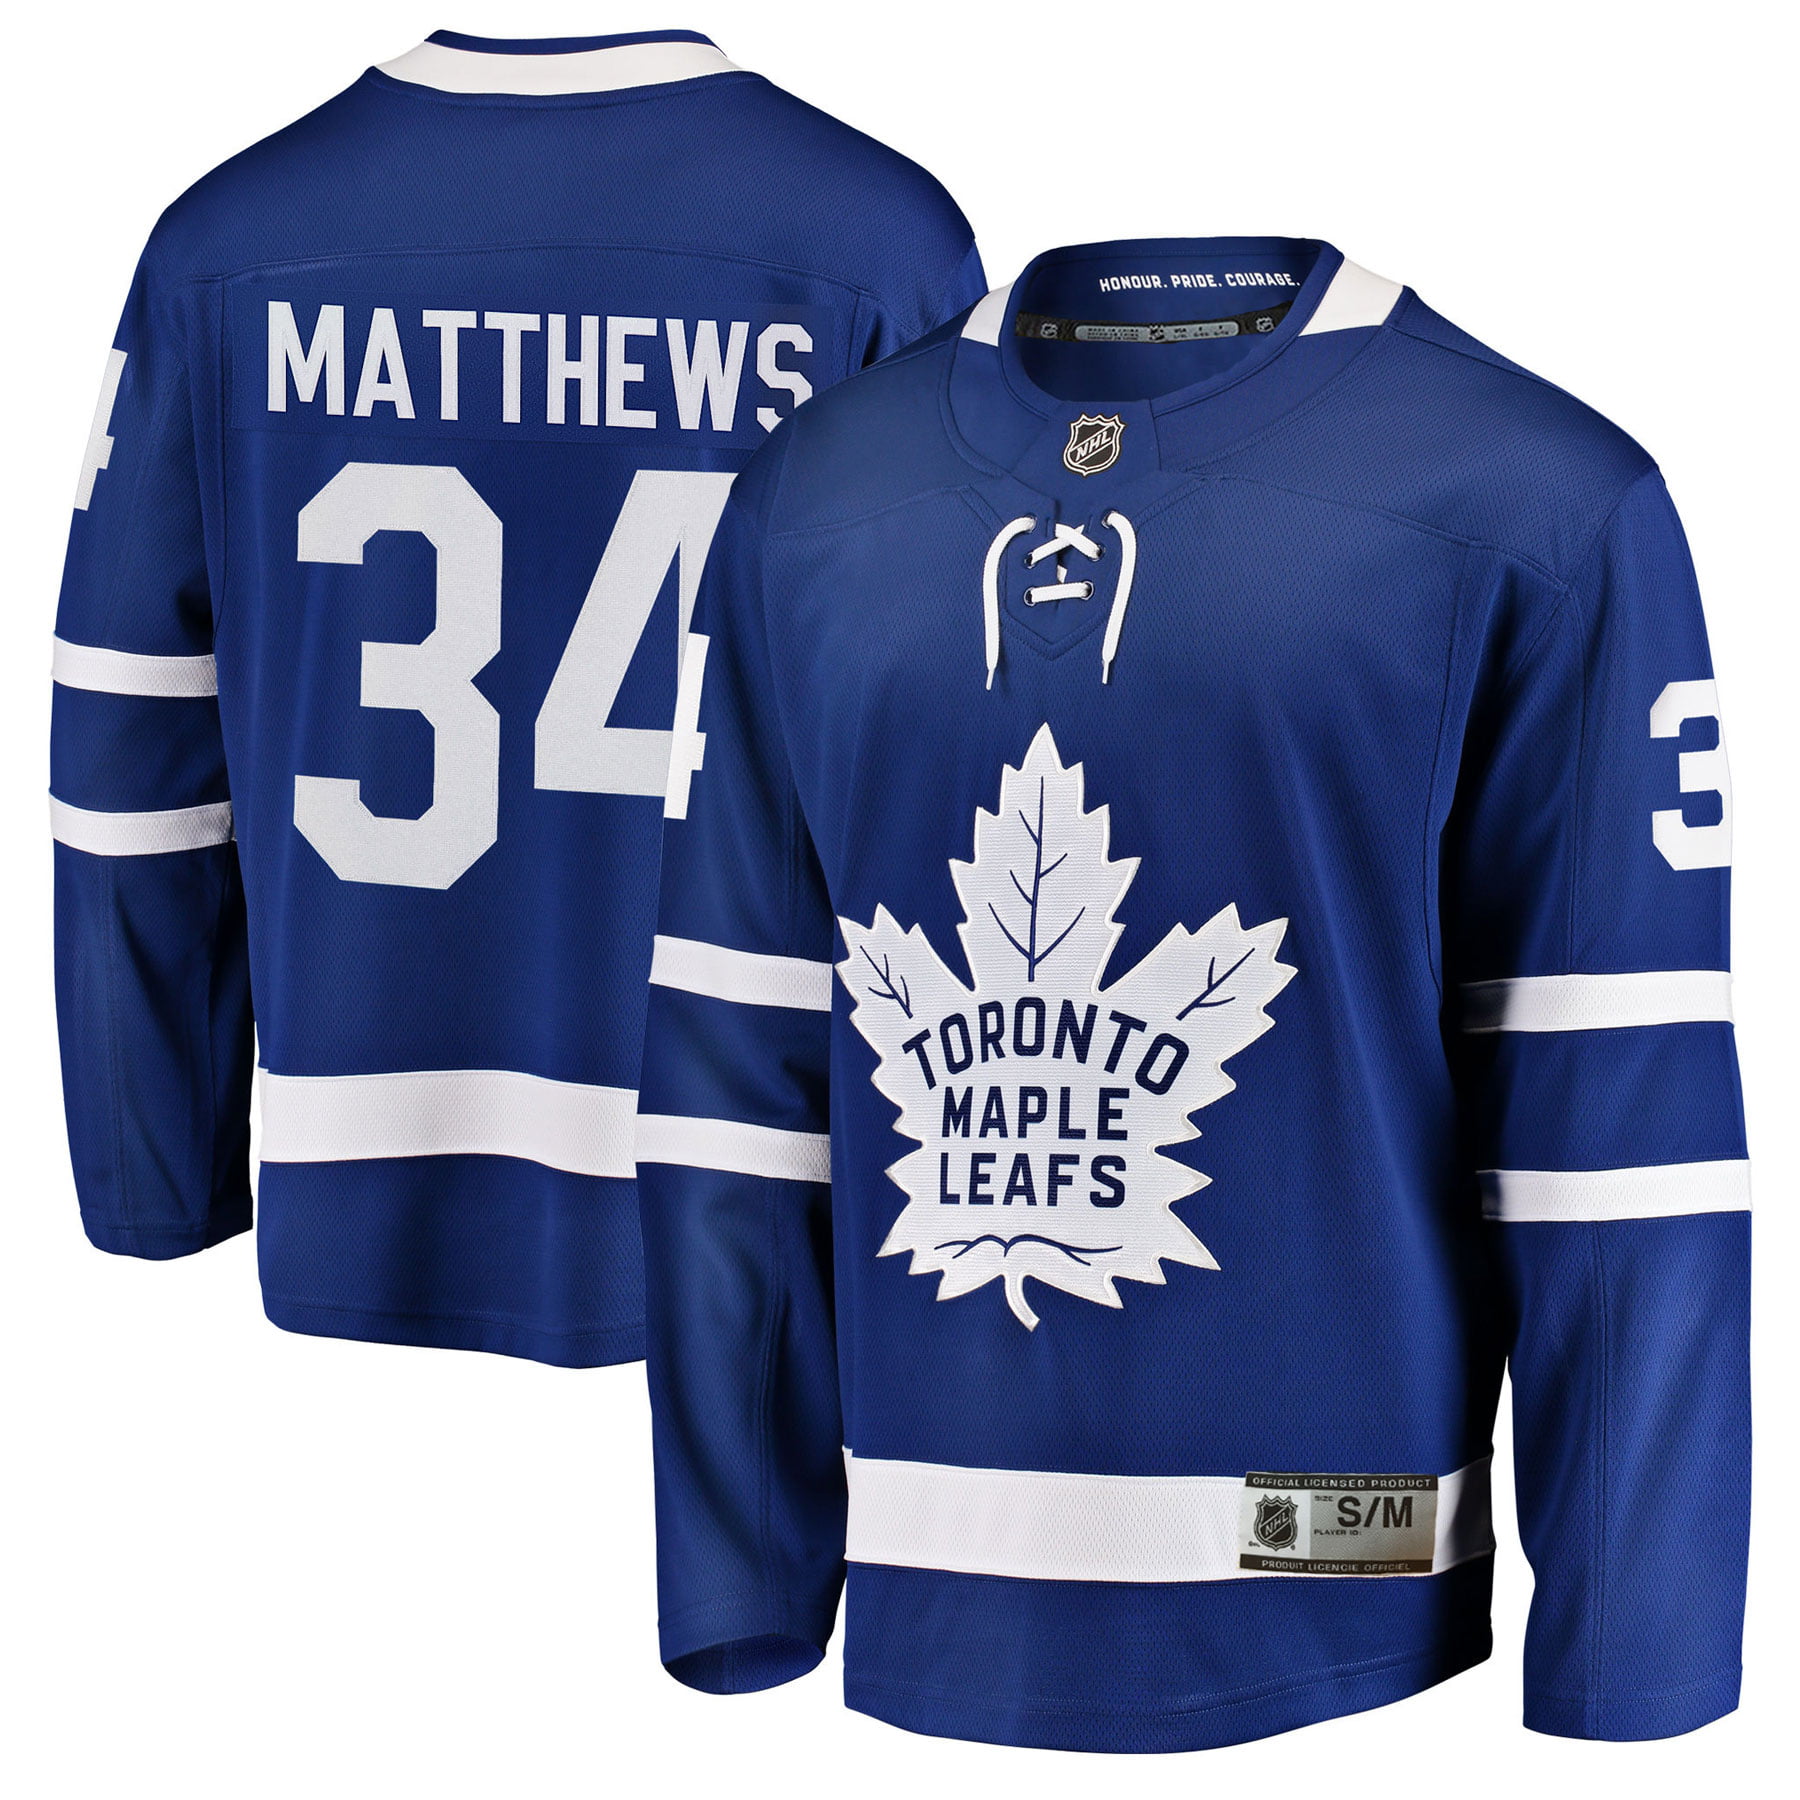 canada maple leaf hockey jersey